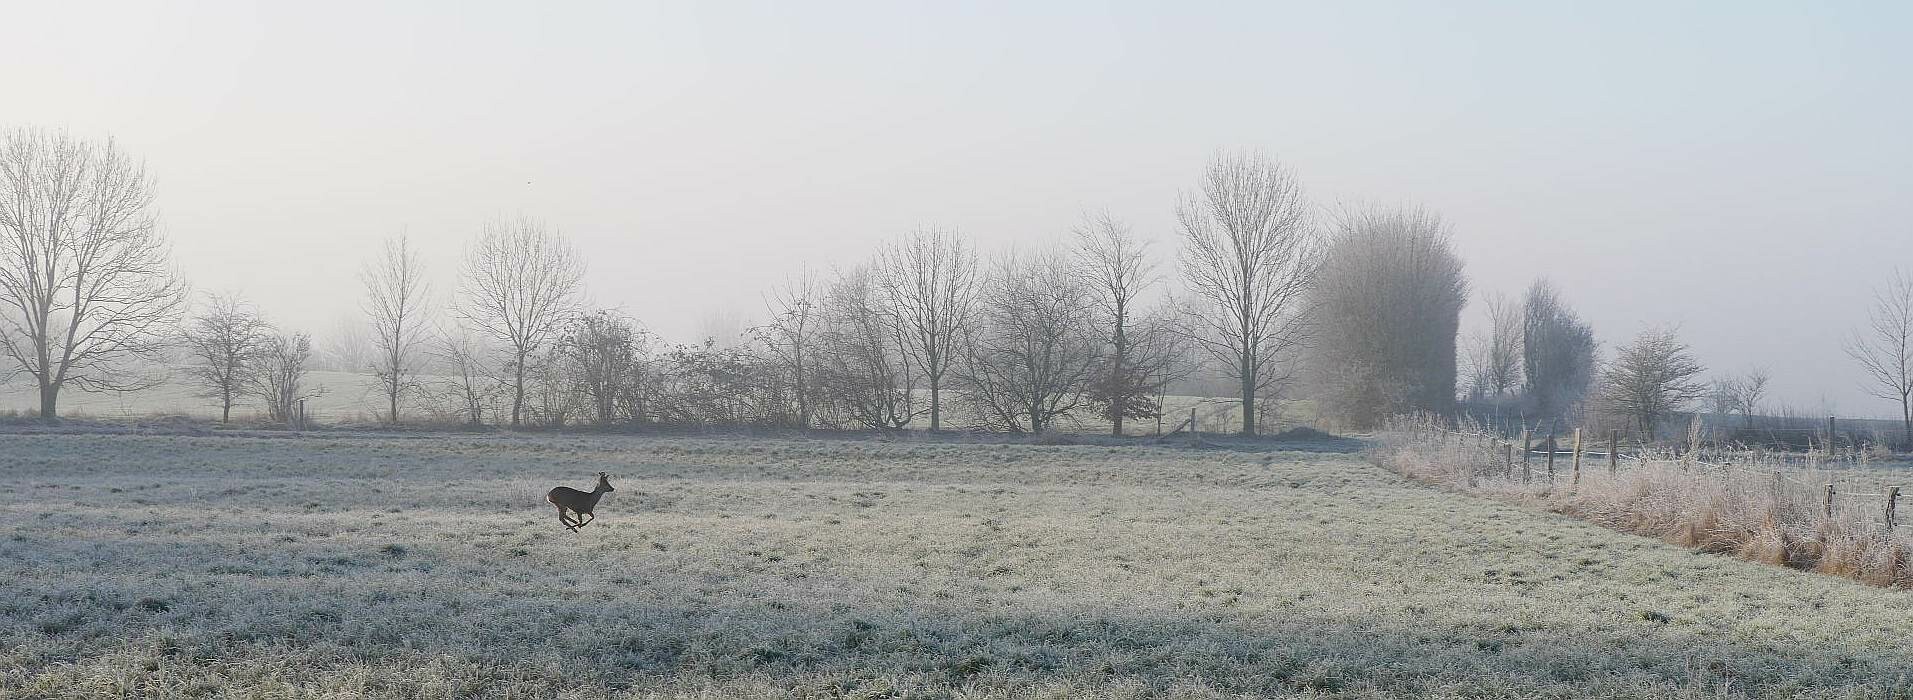 deer on frosty field